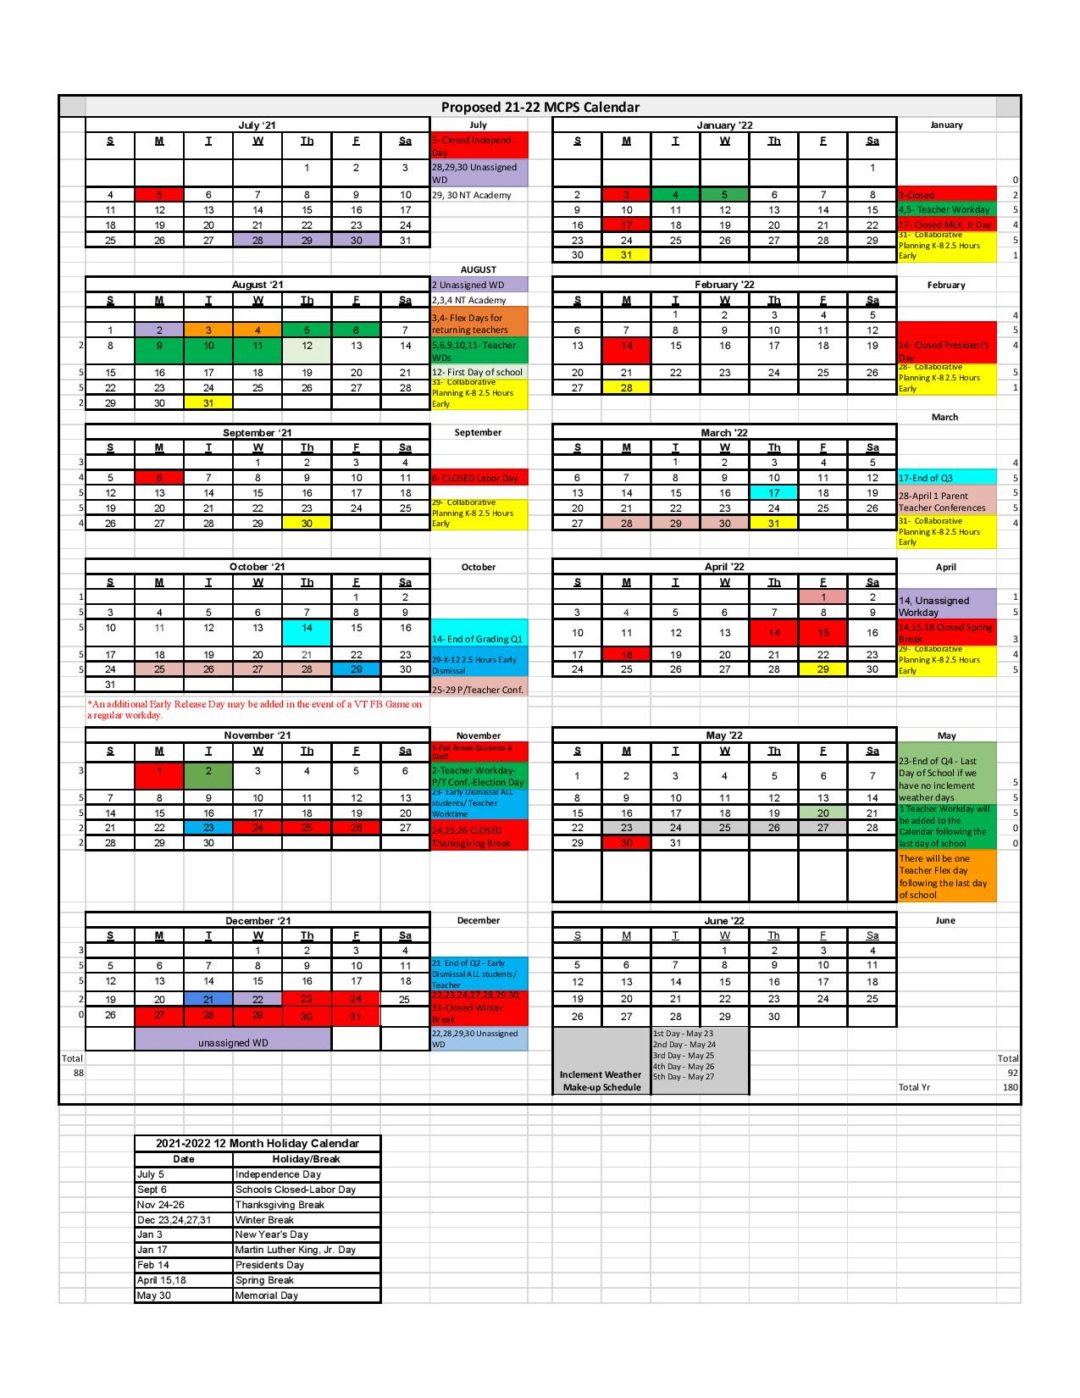 montgomery-county-schools-calendar-2021-2022-in-pdf